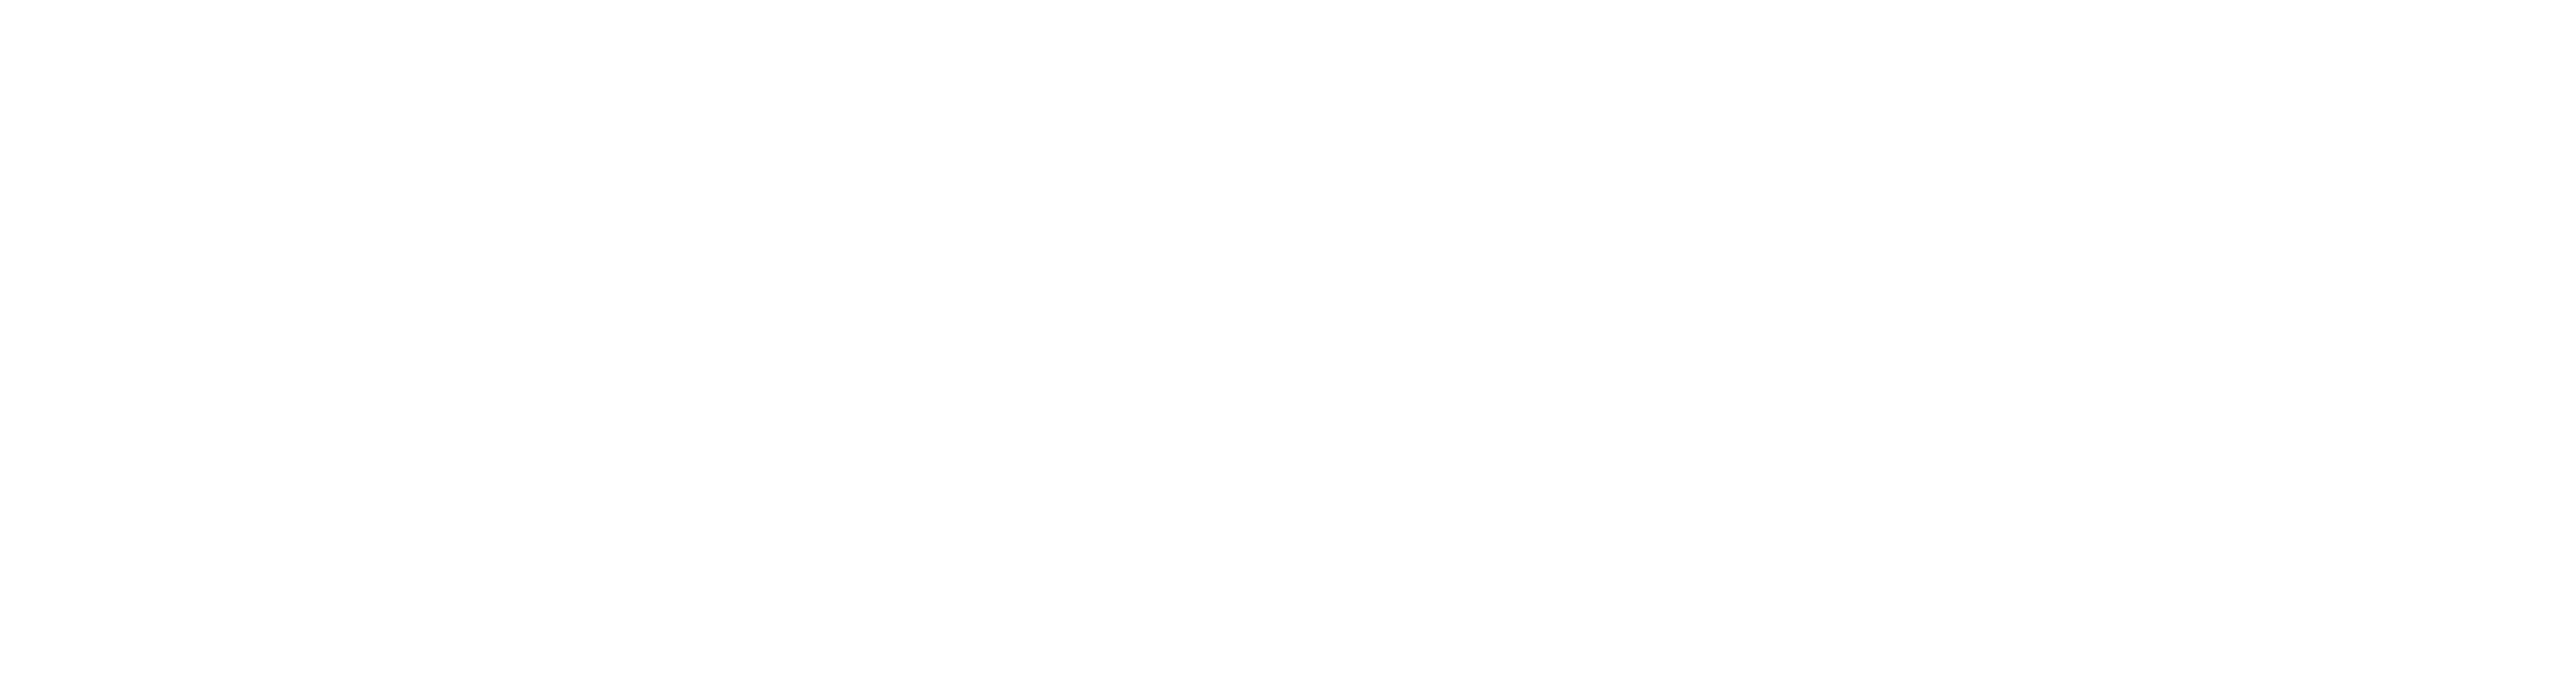 Crisis logo